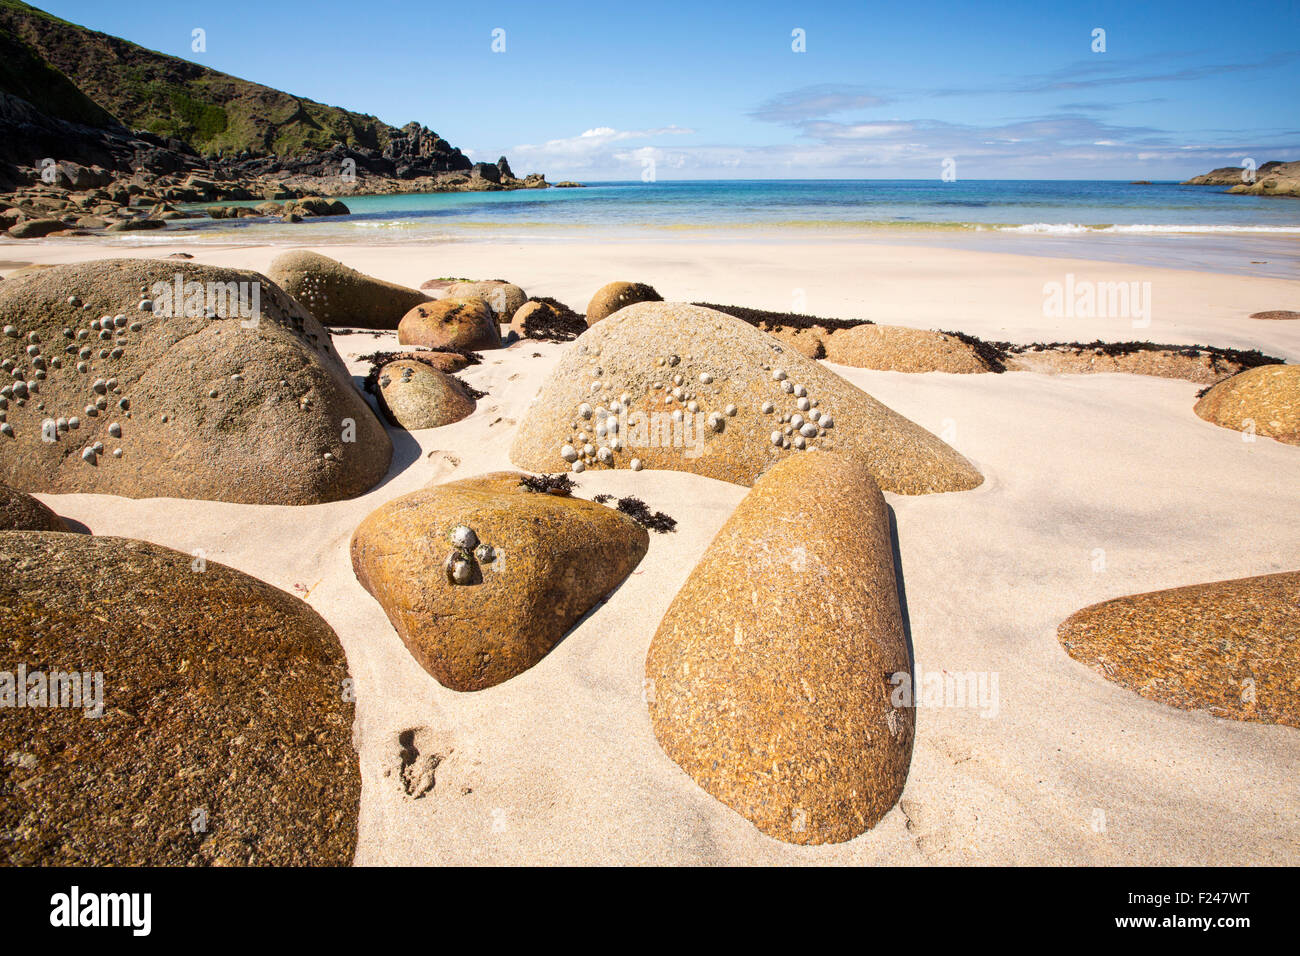 Blocs de granite sur la plage de Porthmeor Cove, sur la côte nord de Cornwall, UK, avec les patelles et les balanes. Banque D'Images